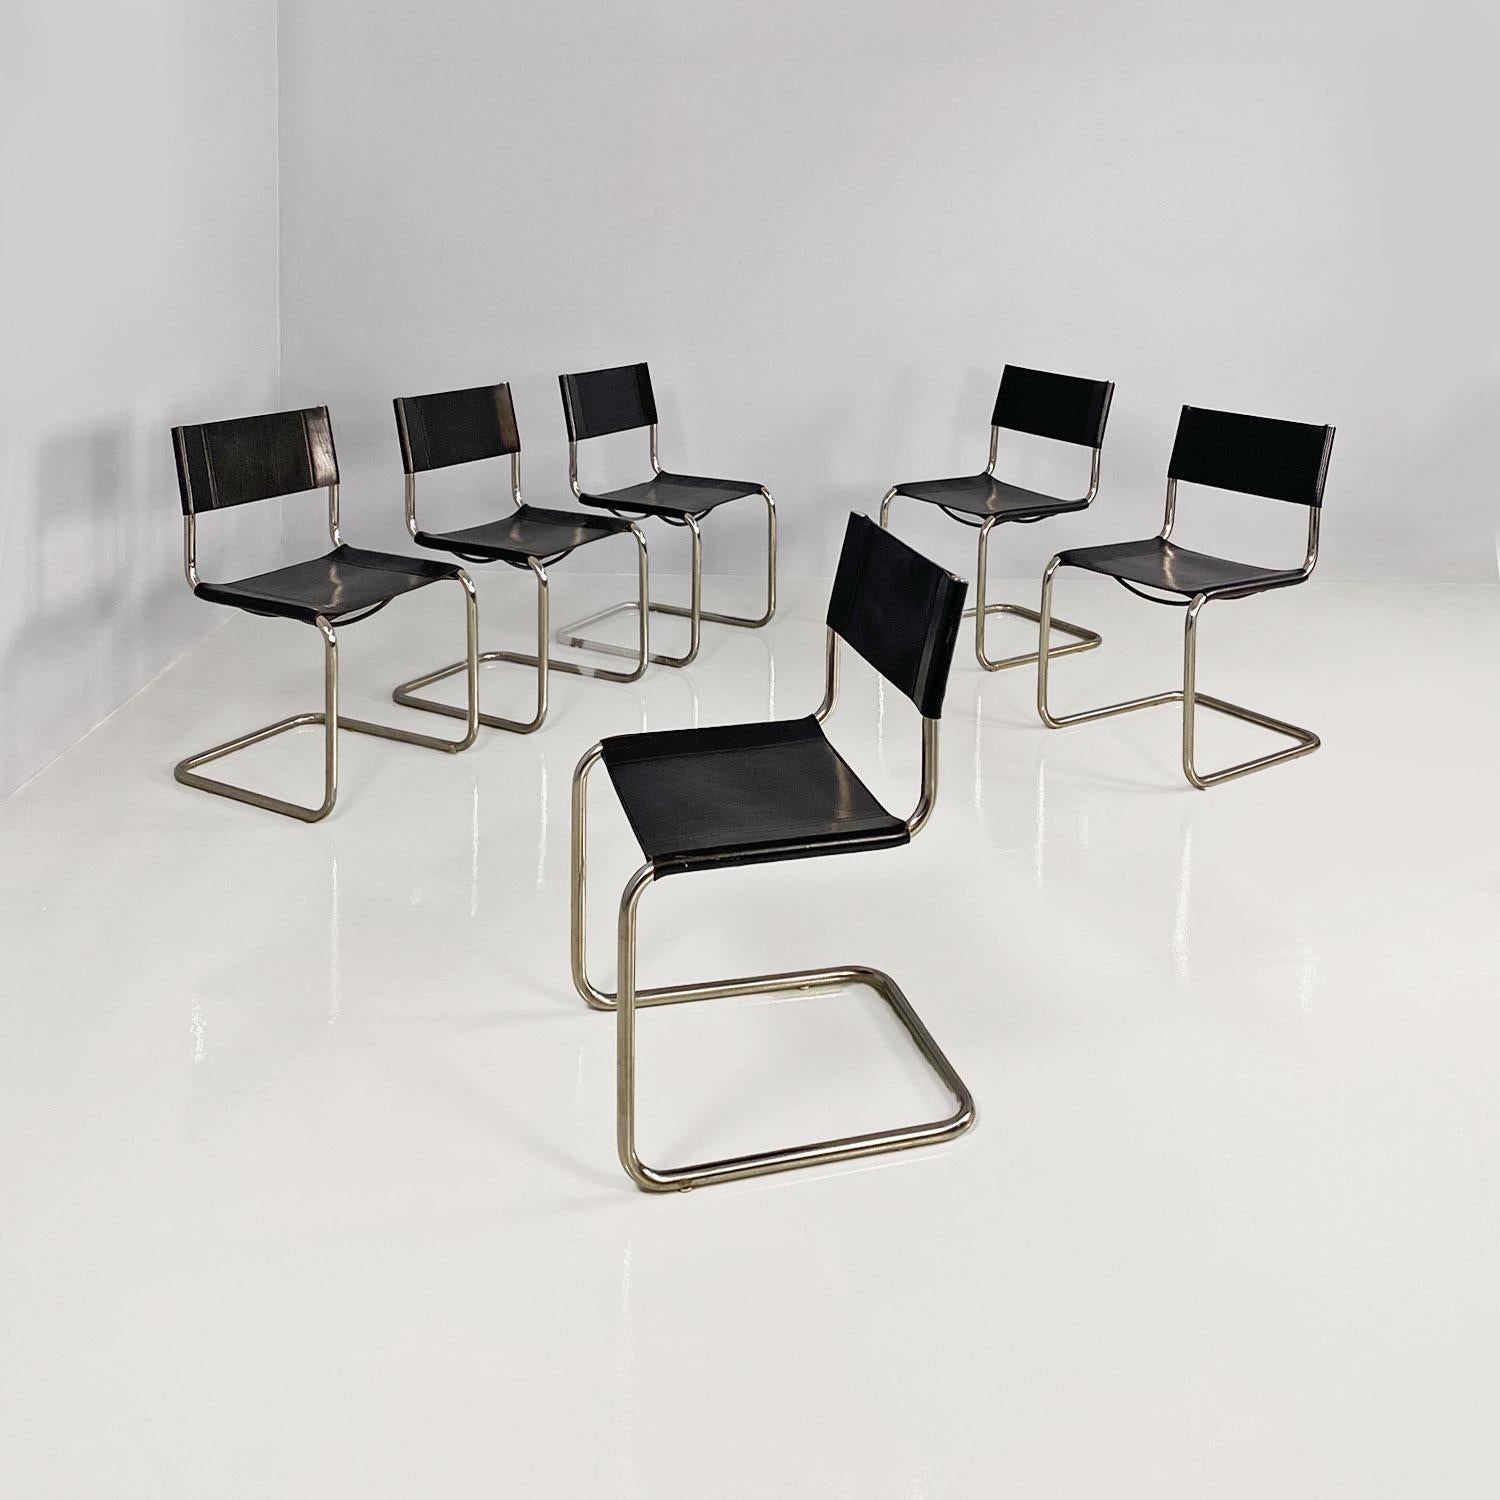 Chaises modernes italiennes en cuir noir et métal chromé tubulaire par Zanotta, années 1970.
Ensemble composé de six chaises avec structure tubulaire en métal chromé et assise et dossier en cuir noir. Sous le siège se trouvent deux supports